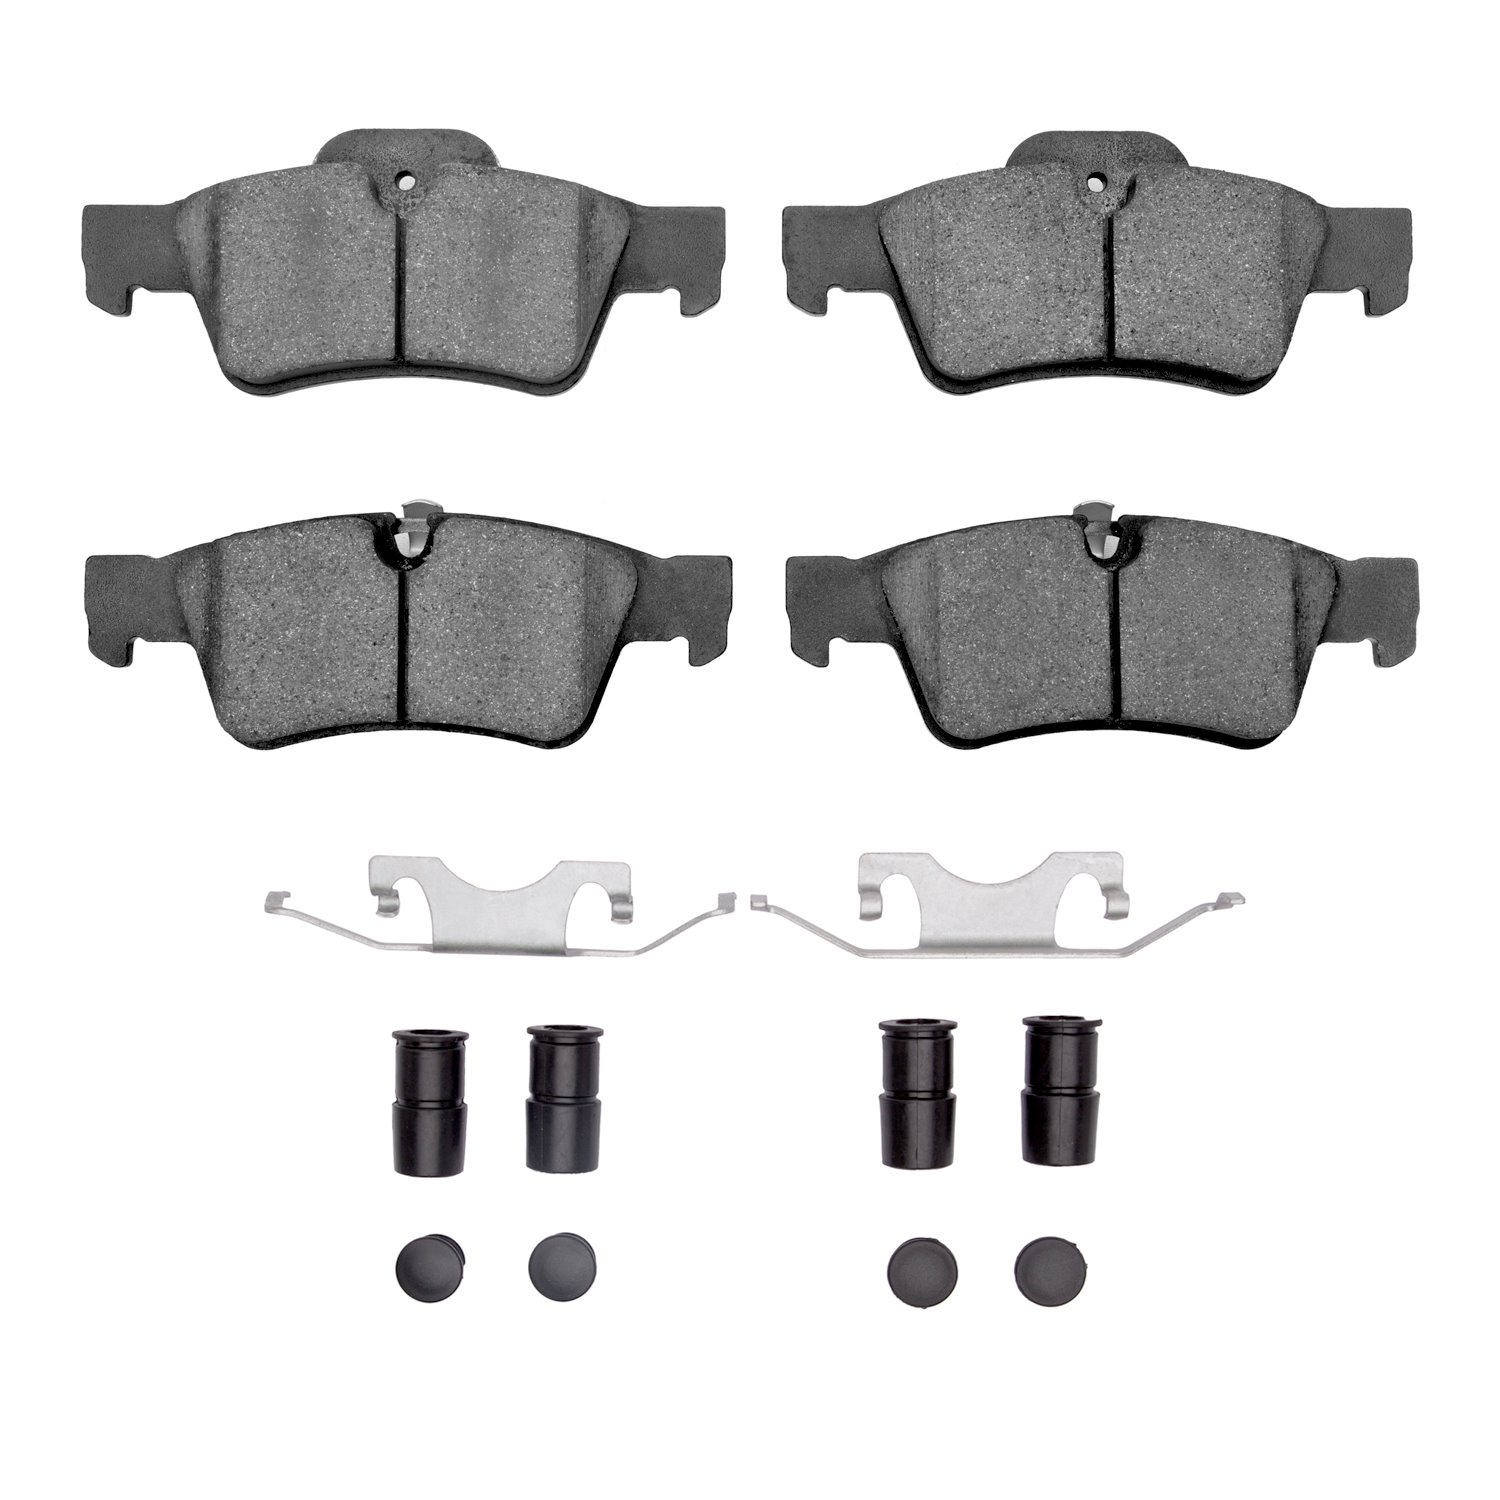 1311-1122-01 3000-Series Semi-Metallic Brake Pads & Hardware Kit, 2005-2018 Mercedes-Benz, Position: Rear